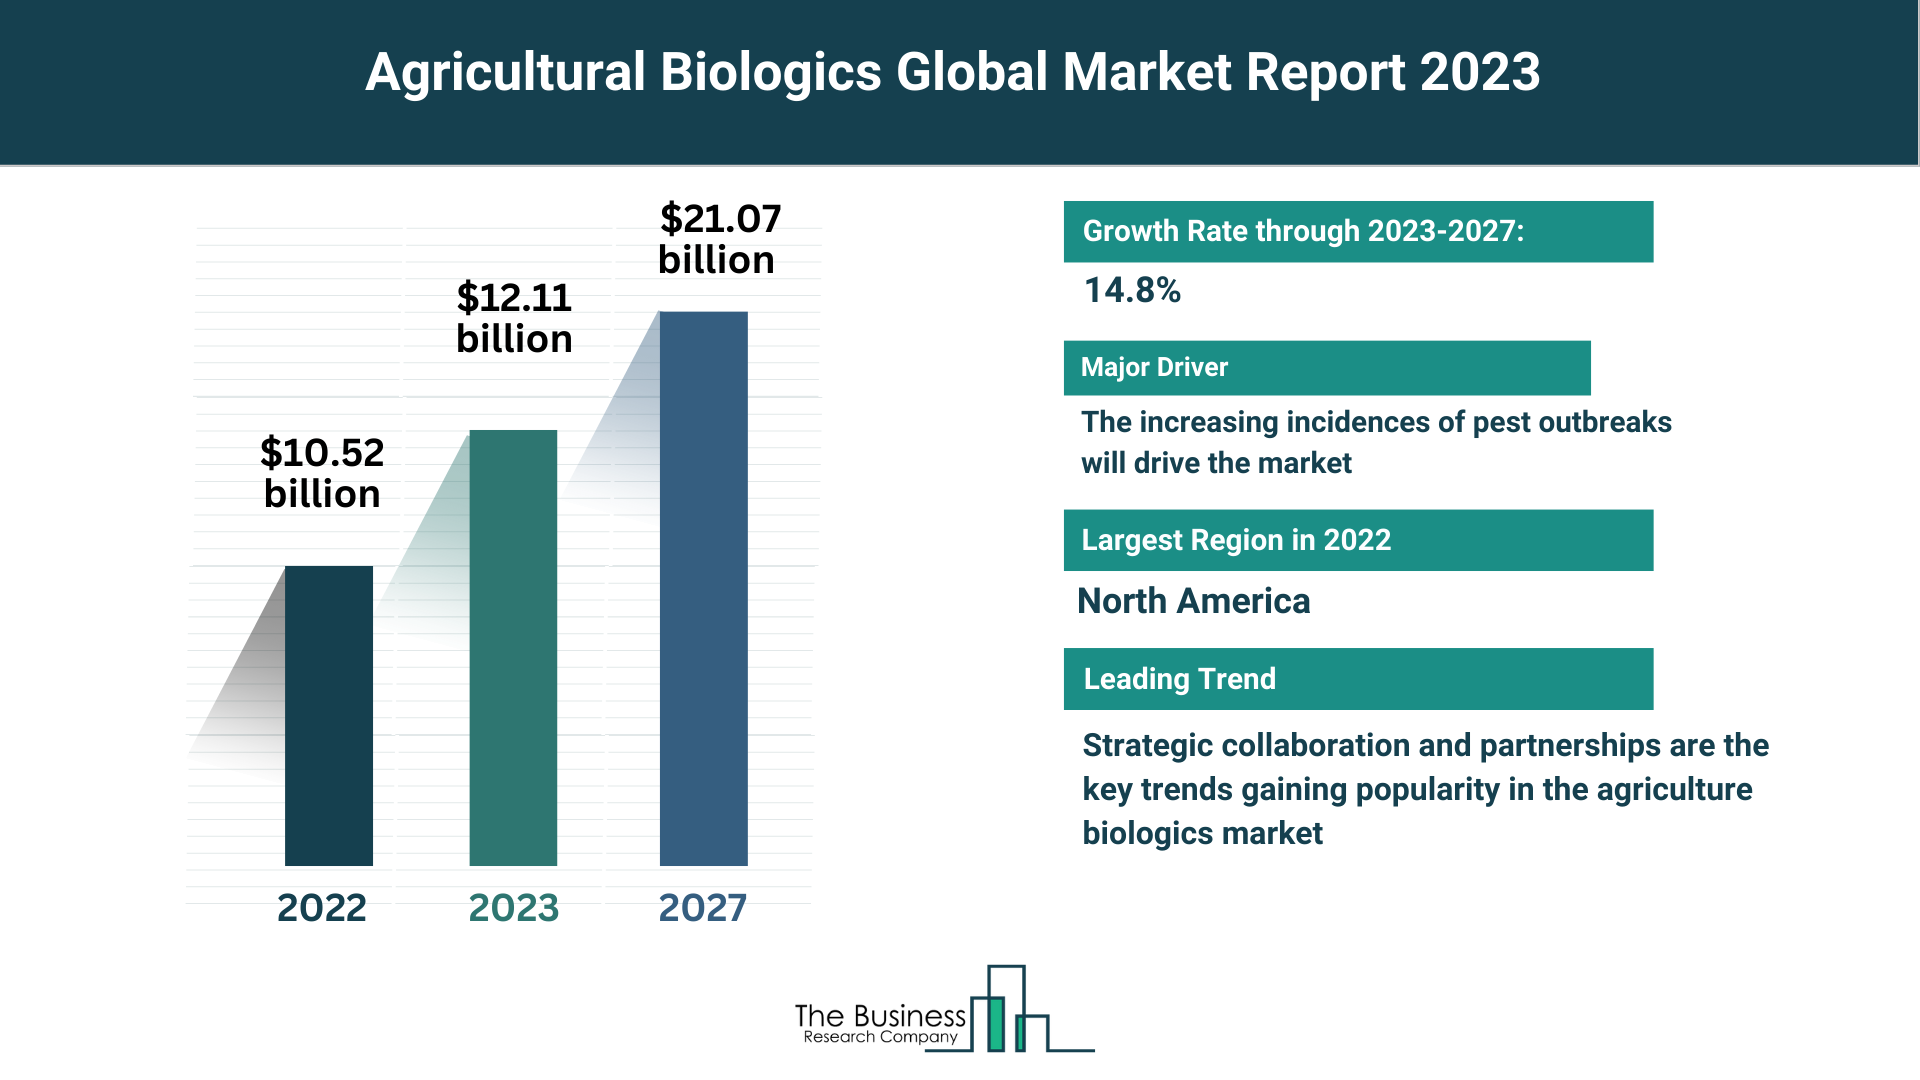 Global Agricultural Biologics Market